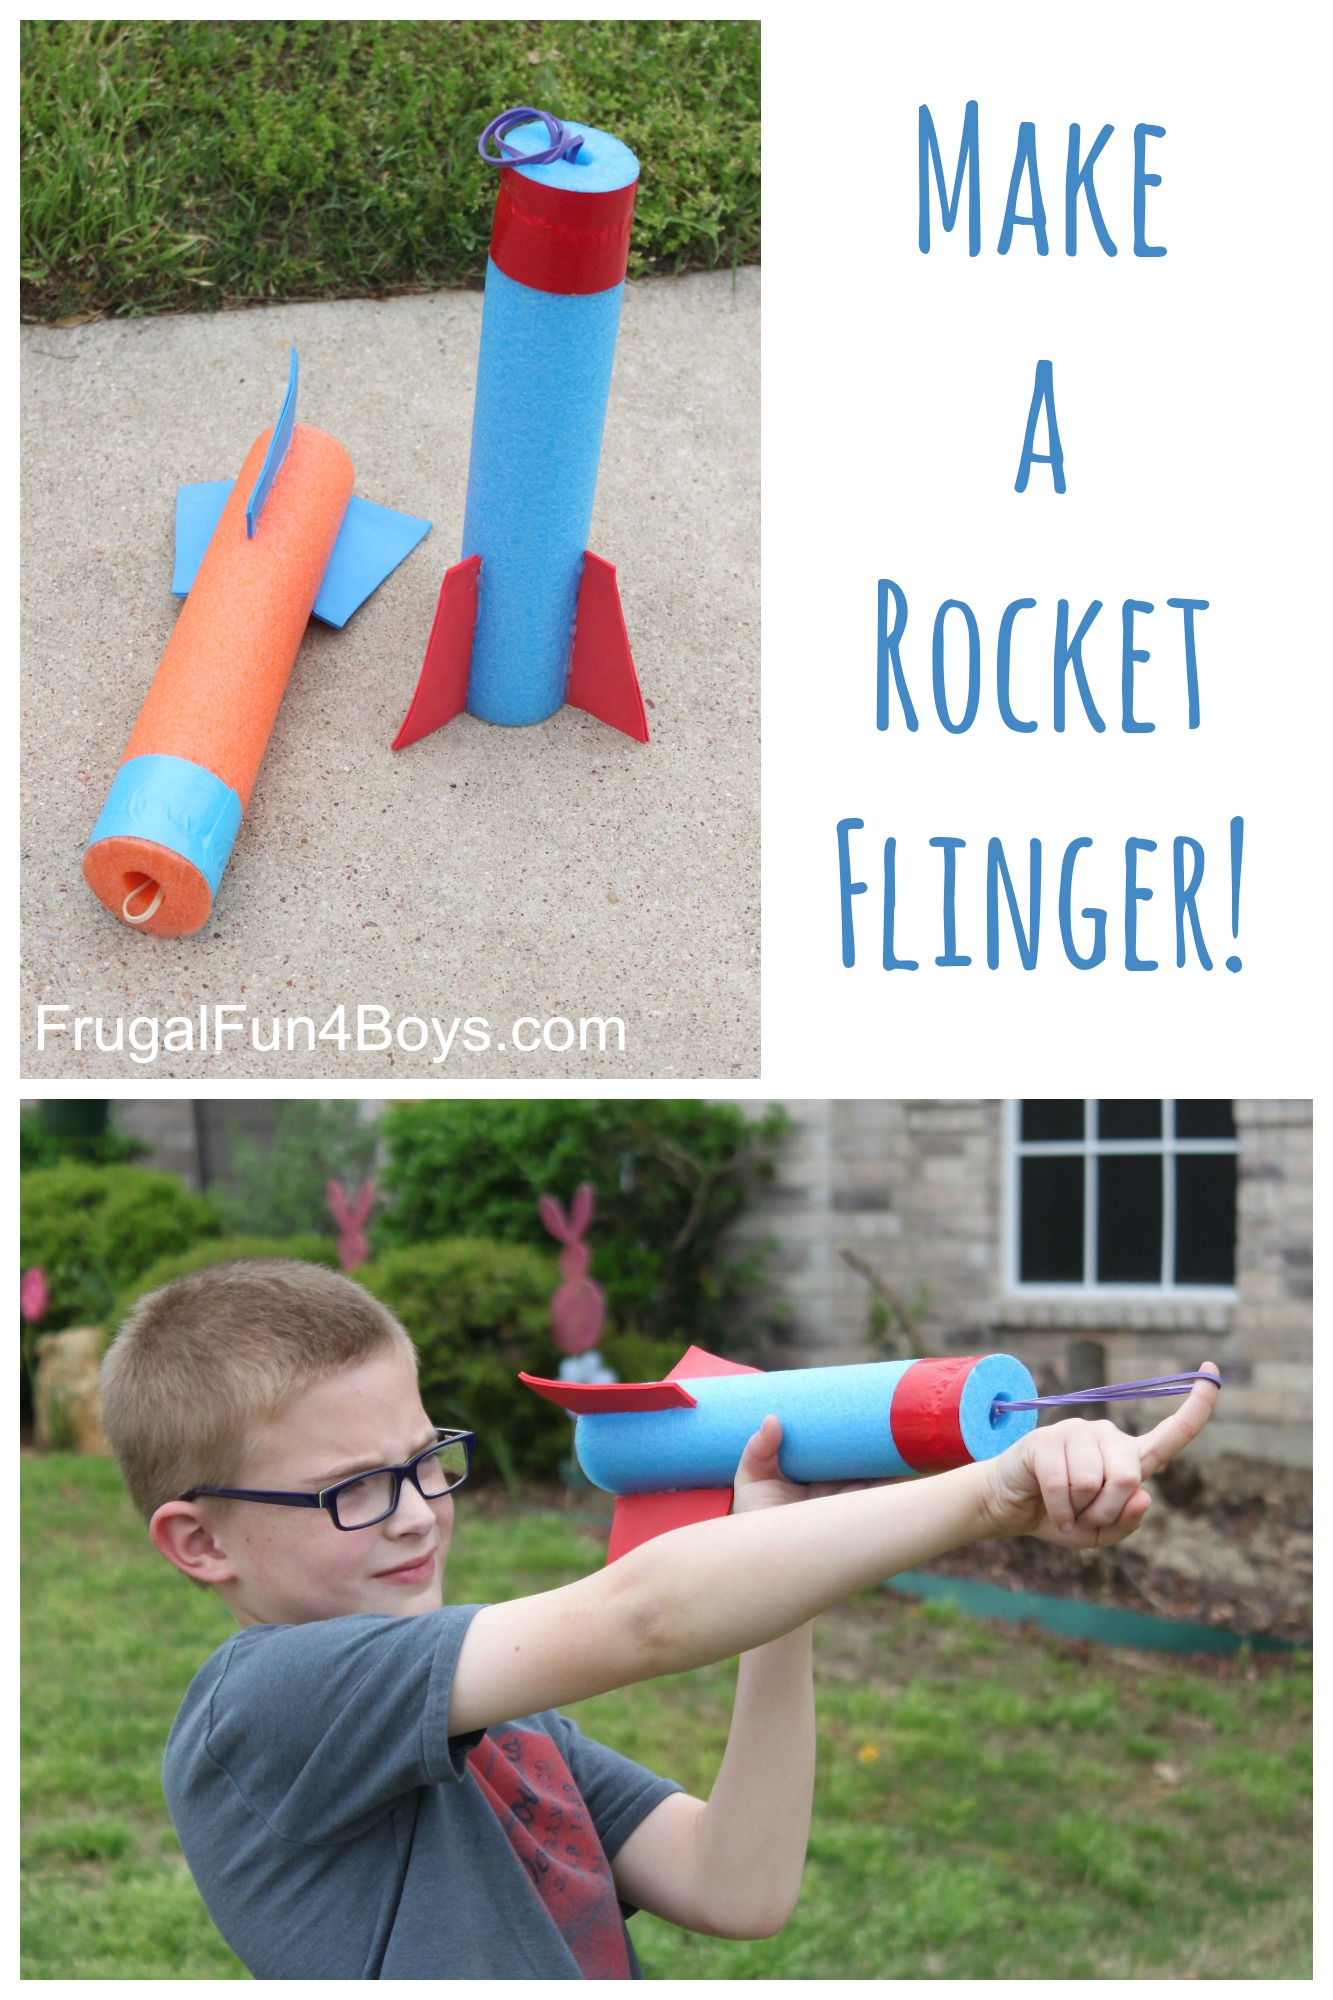 How to Make a Pool Noodle Rocket Flinger - DIY Toy!